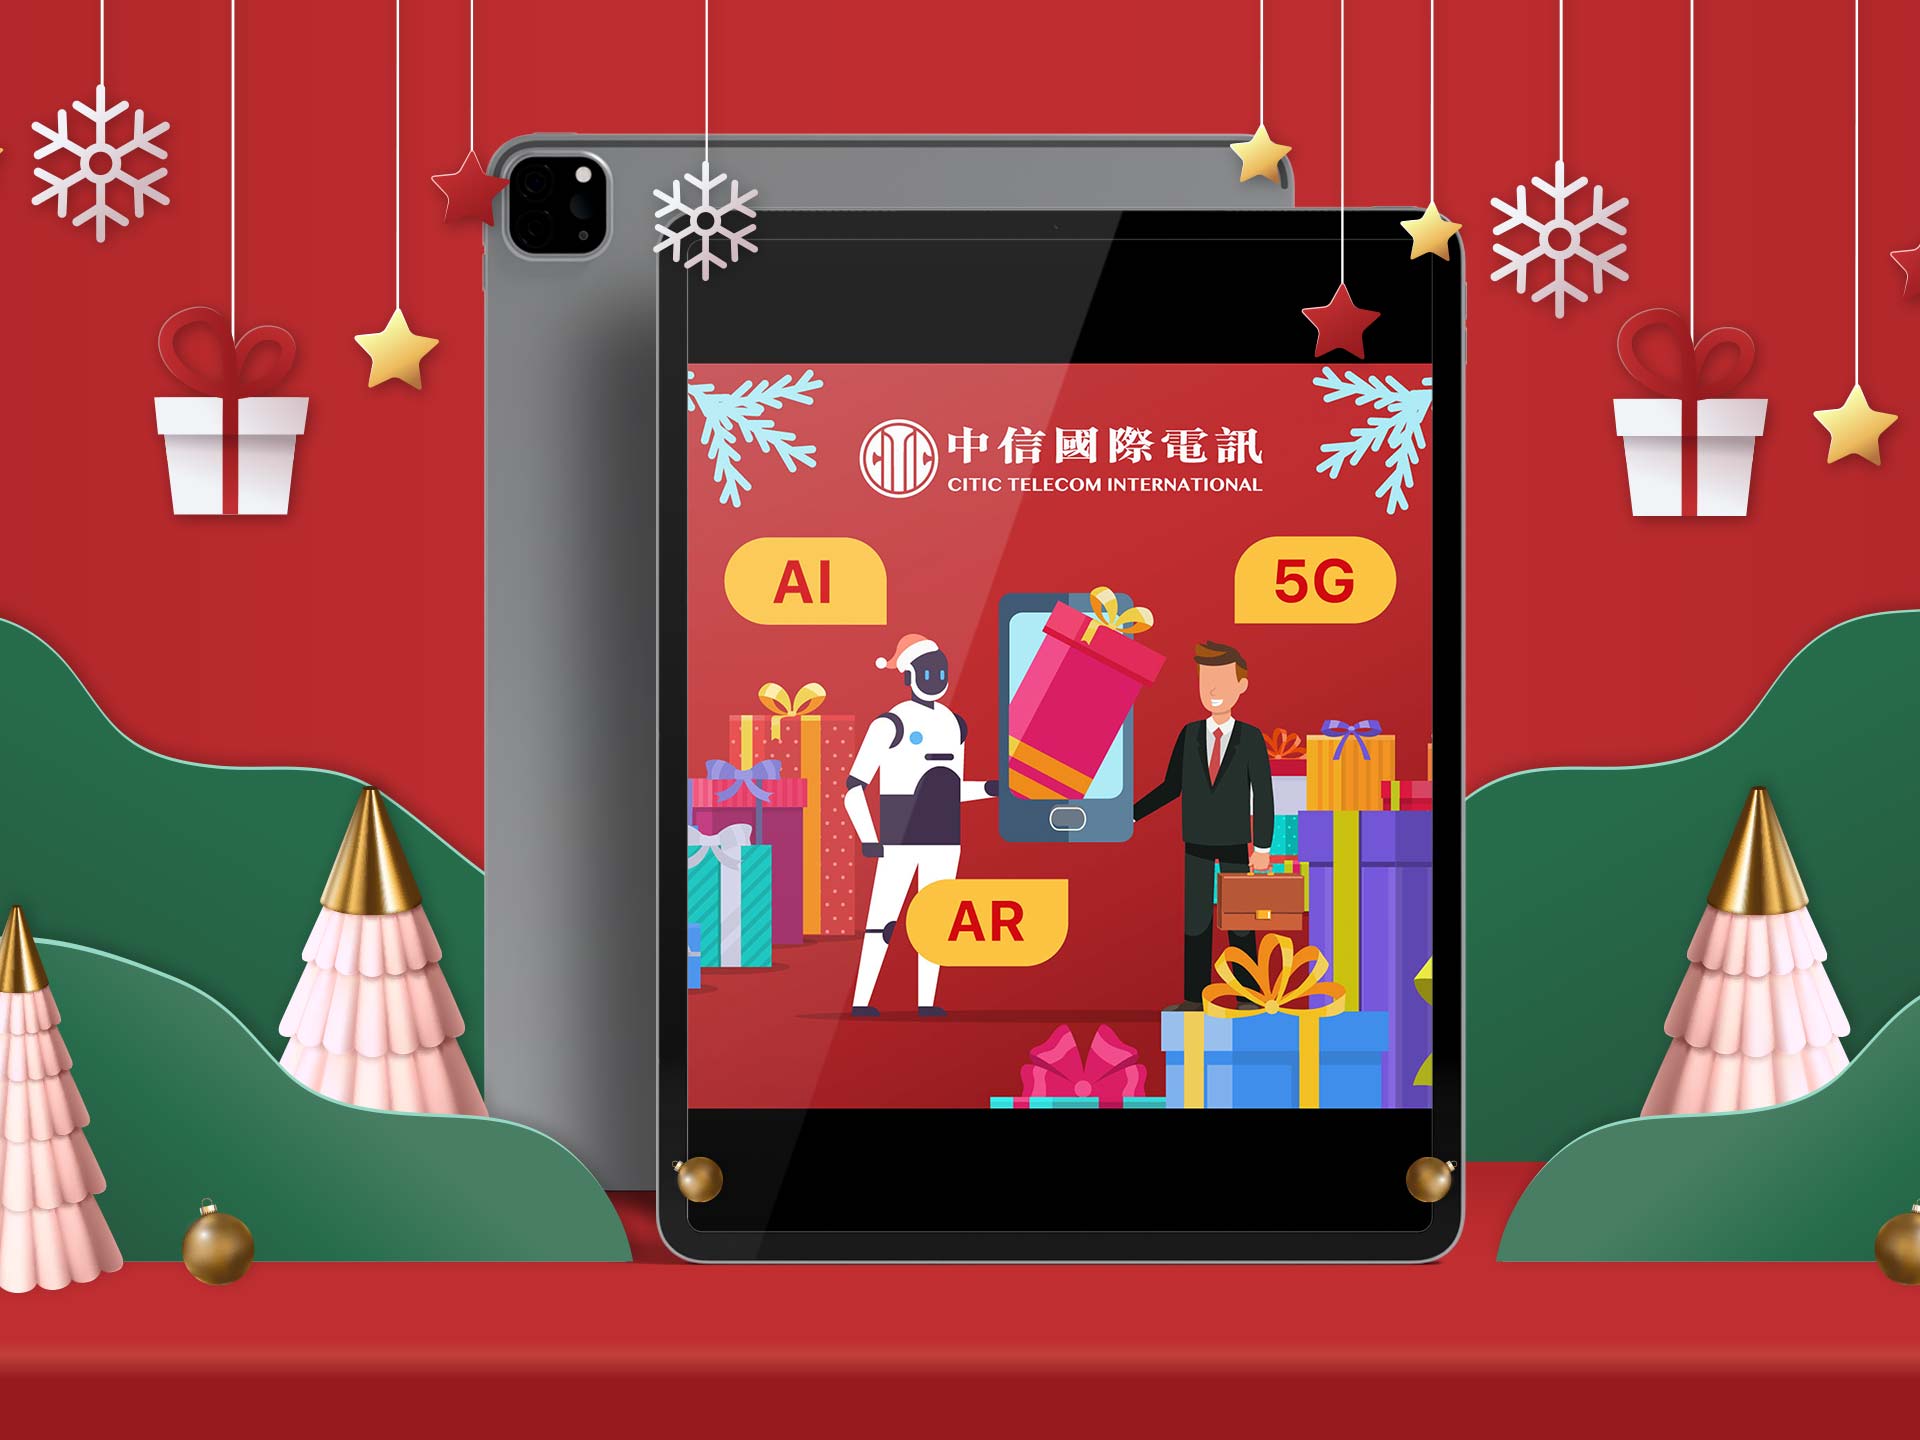 中信国际电讯圣诞电子贺卡 2021